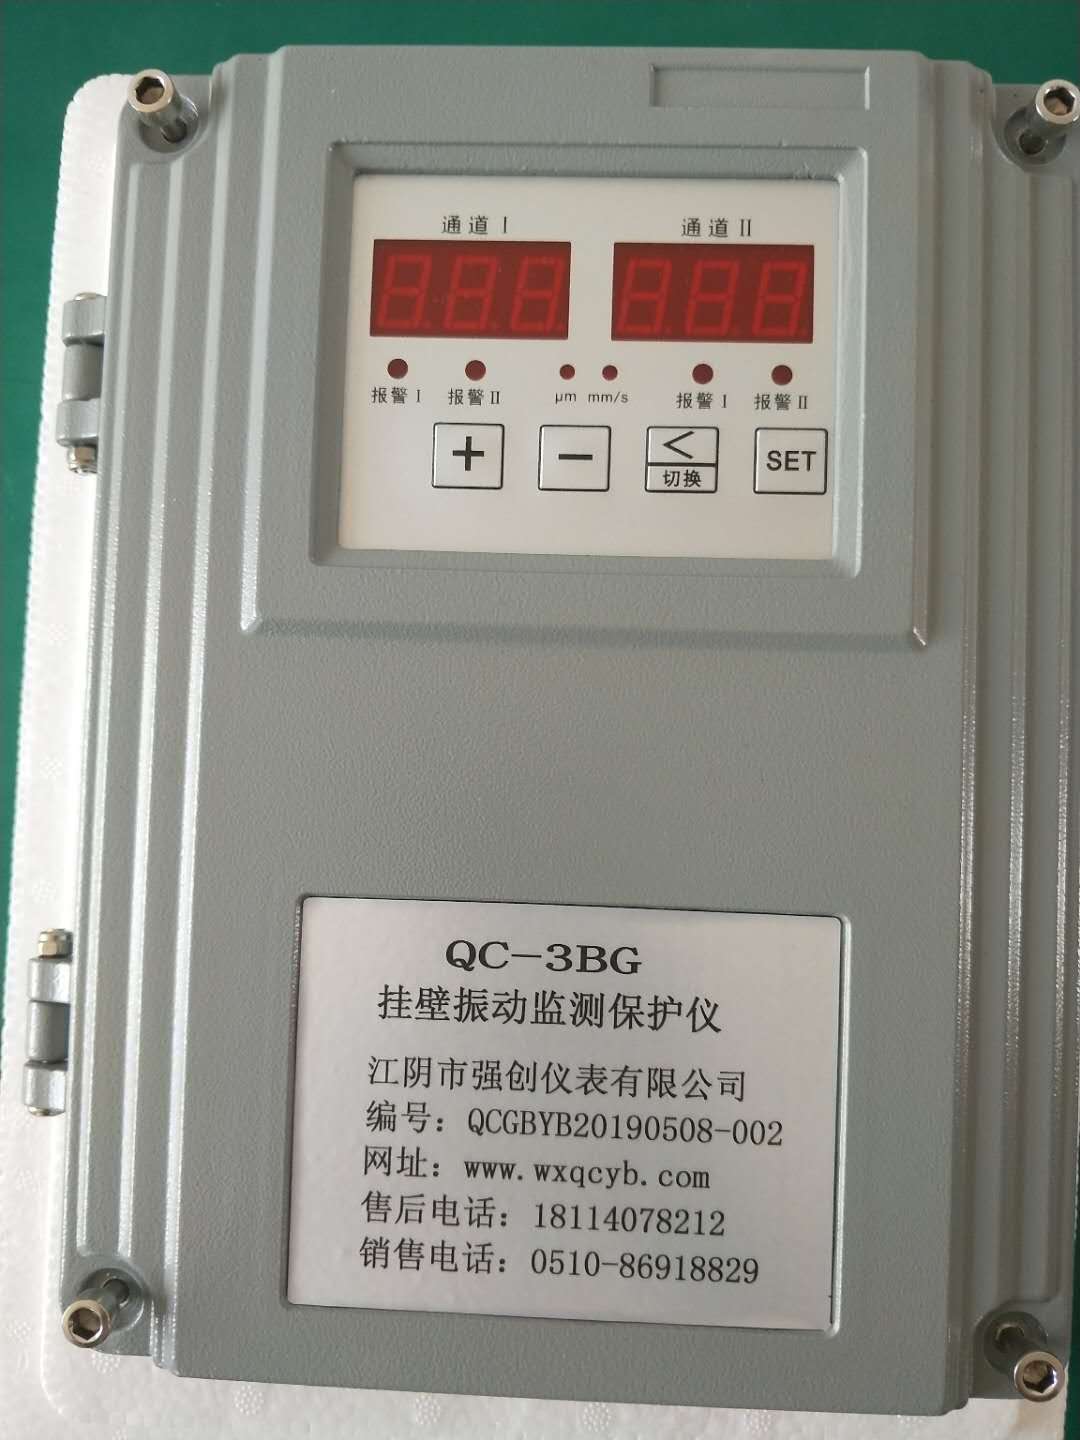 QC-3BG振动监控仪(挂壁式)